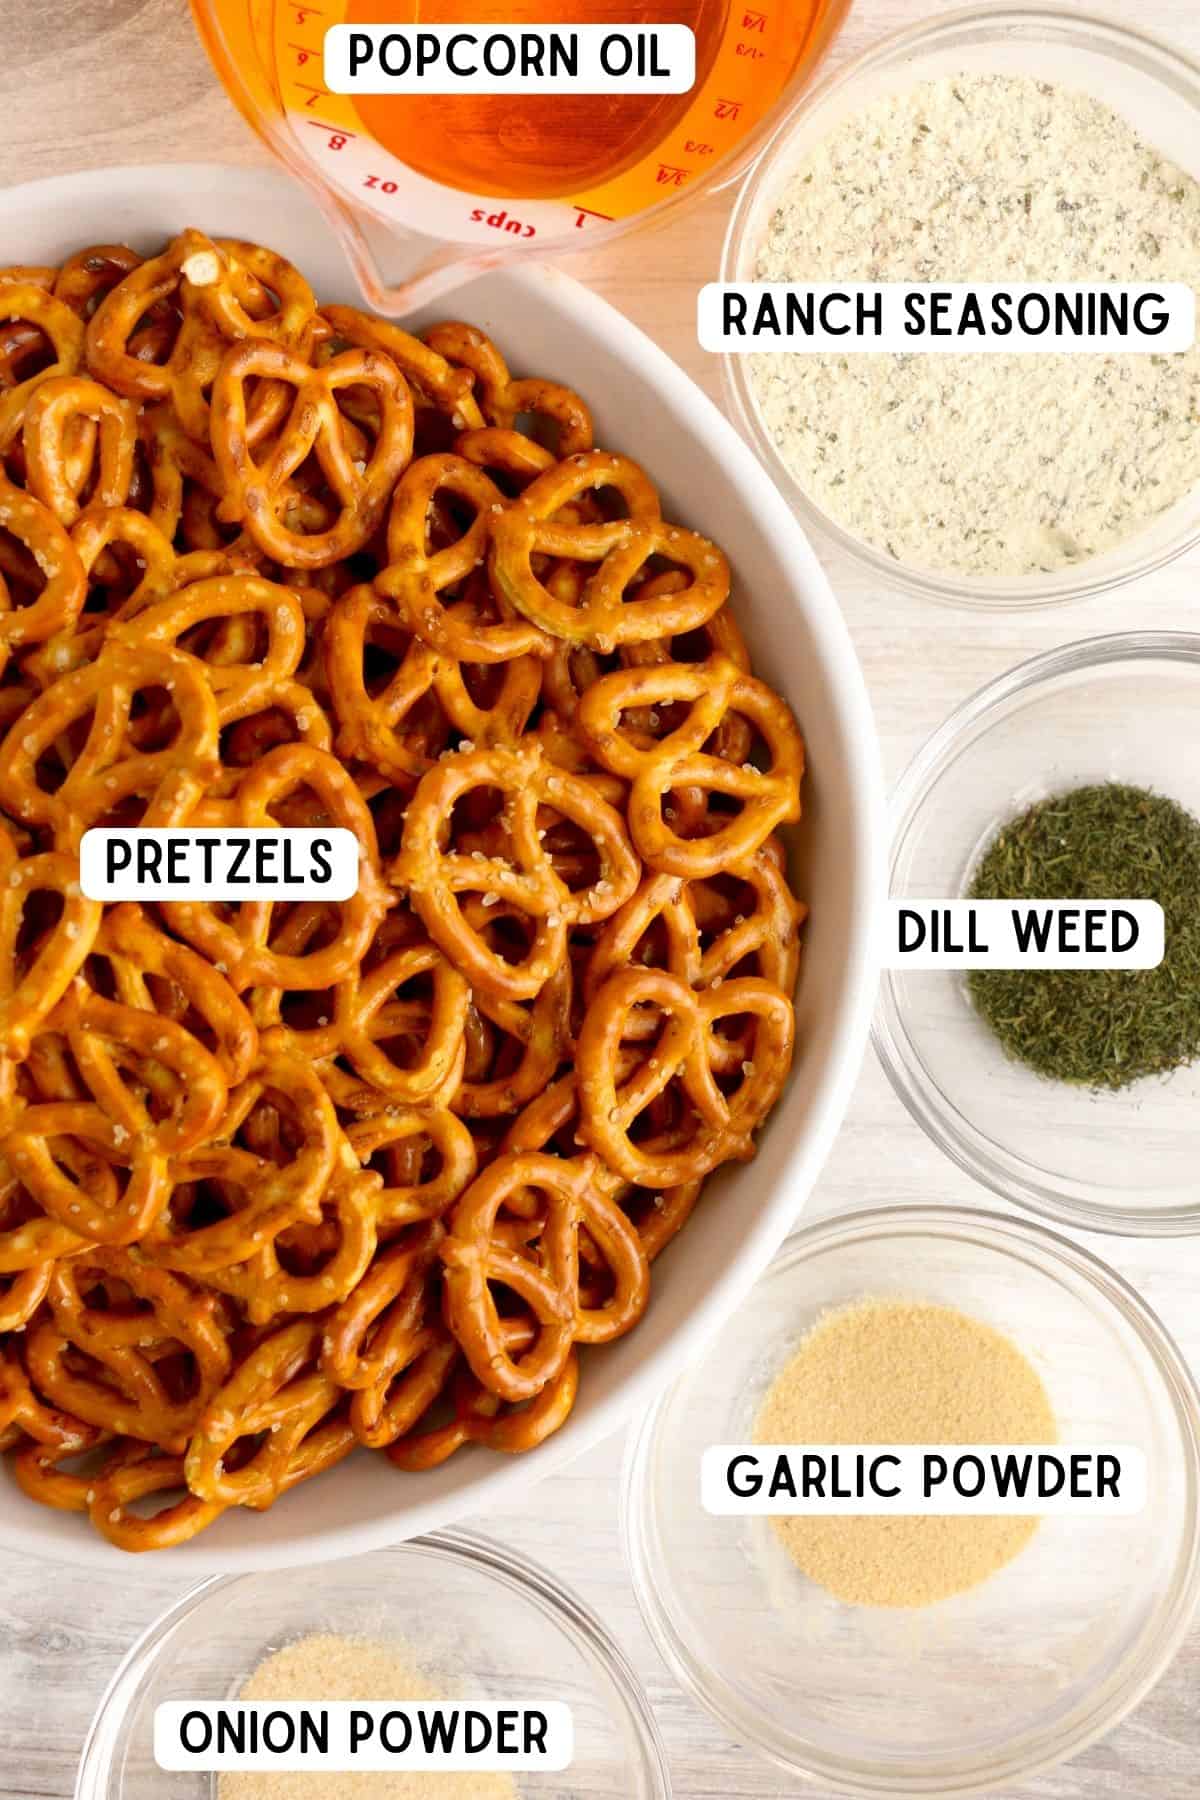 Pretzel twists, popcorn oil, ranch seasoning, garlic powder, dill weed, and onion powder.